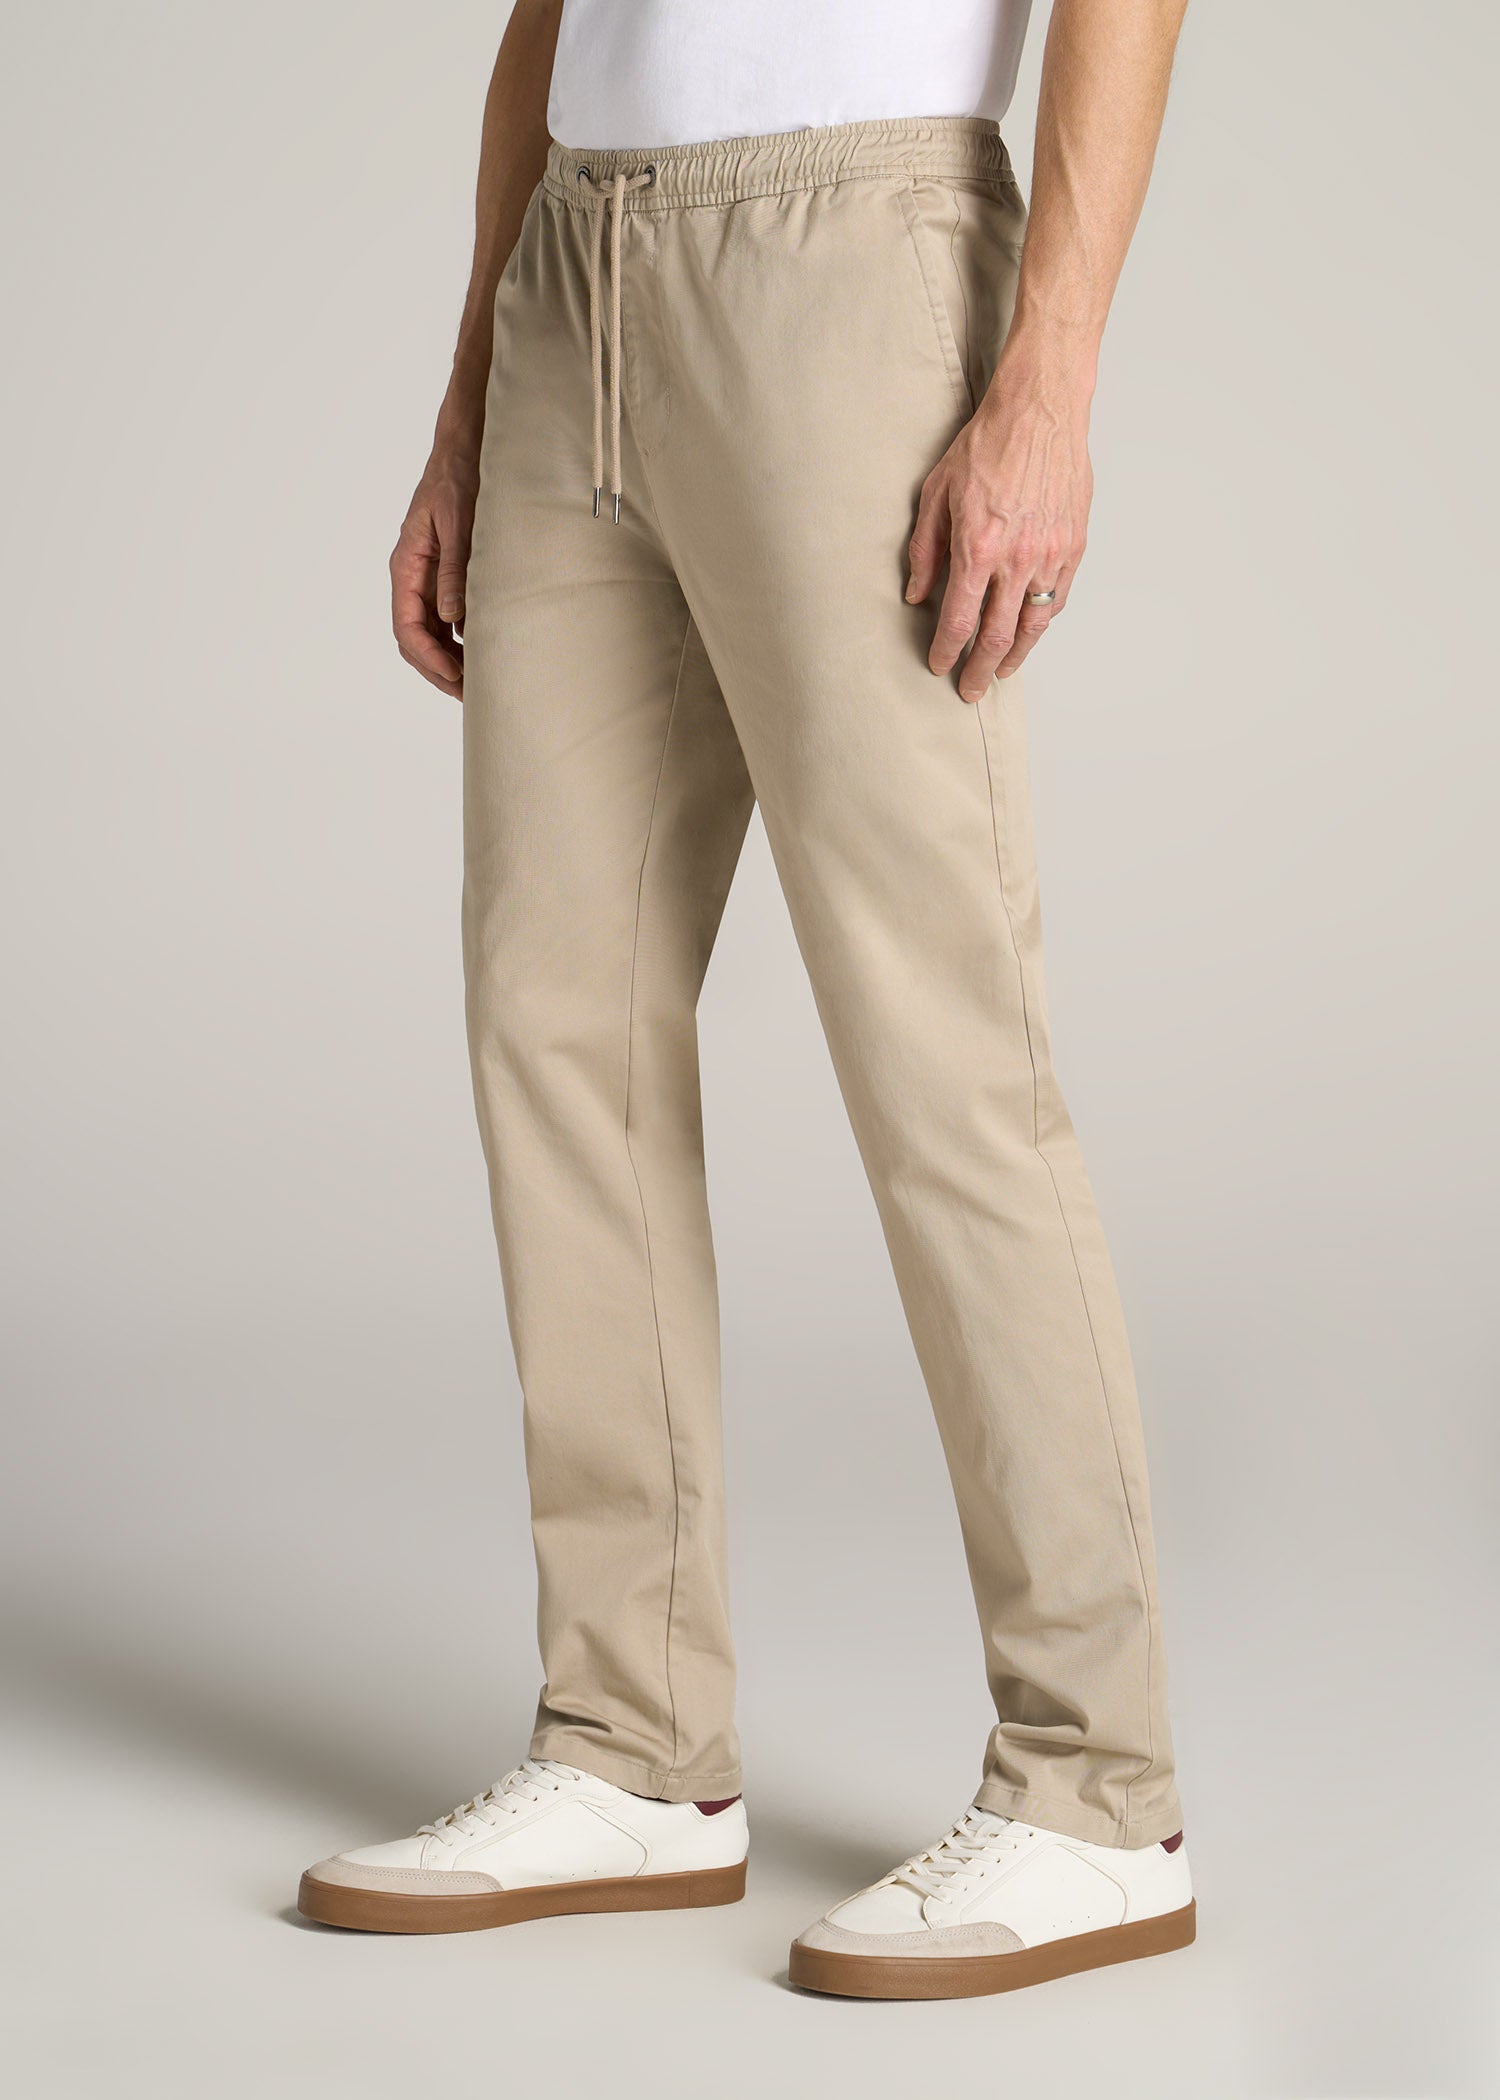 jernbane høste Jeg har en engelskundervisning Stretch Pull On Deck Pants For Tall Men Light Khaki | American Tall